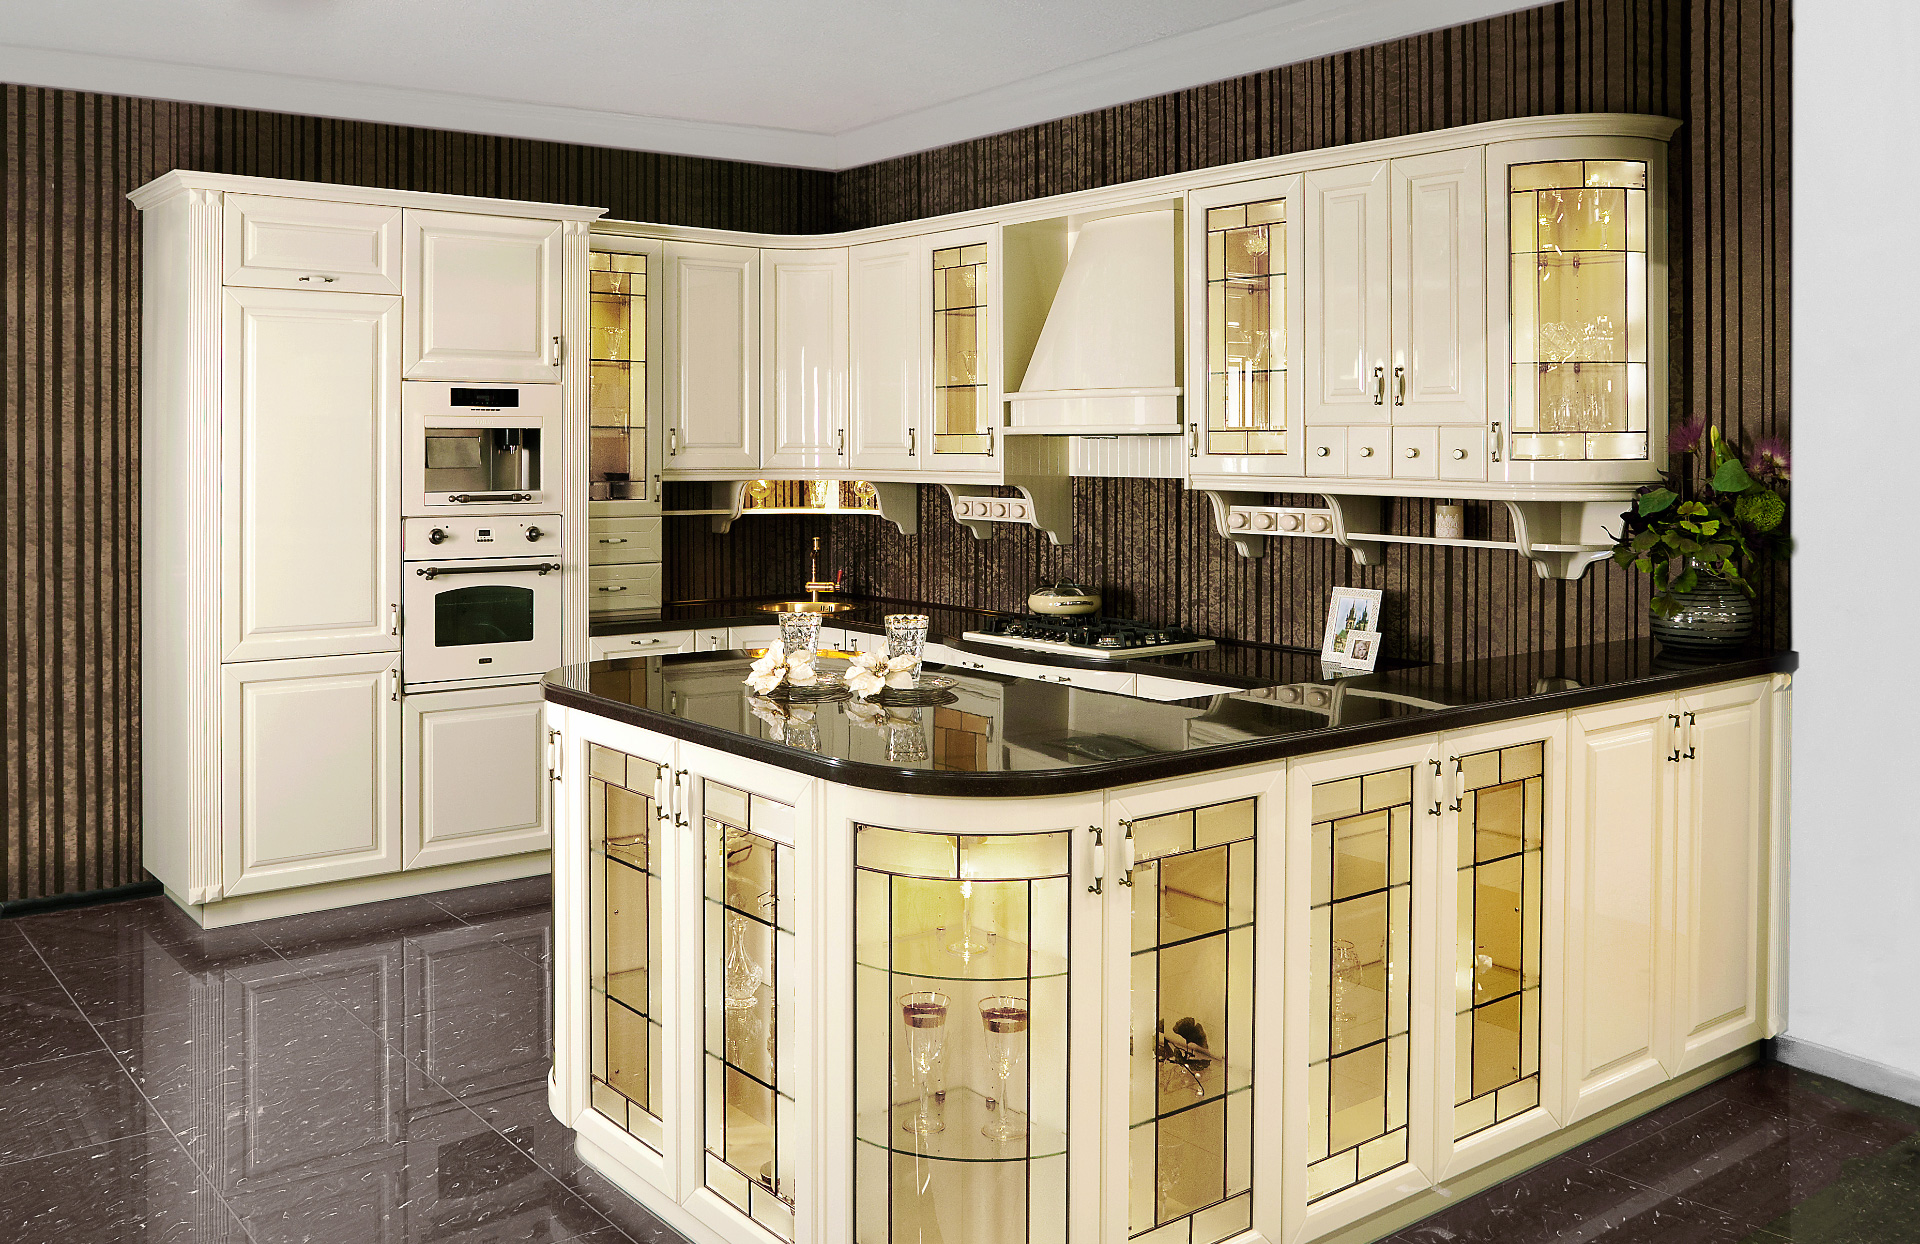 Štýlová kuchyňa HALINA s množstvom ozdobných vitráží s vnútorným osvetlením.